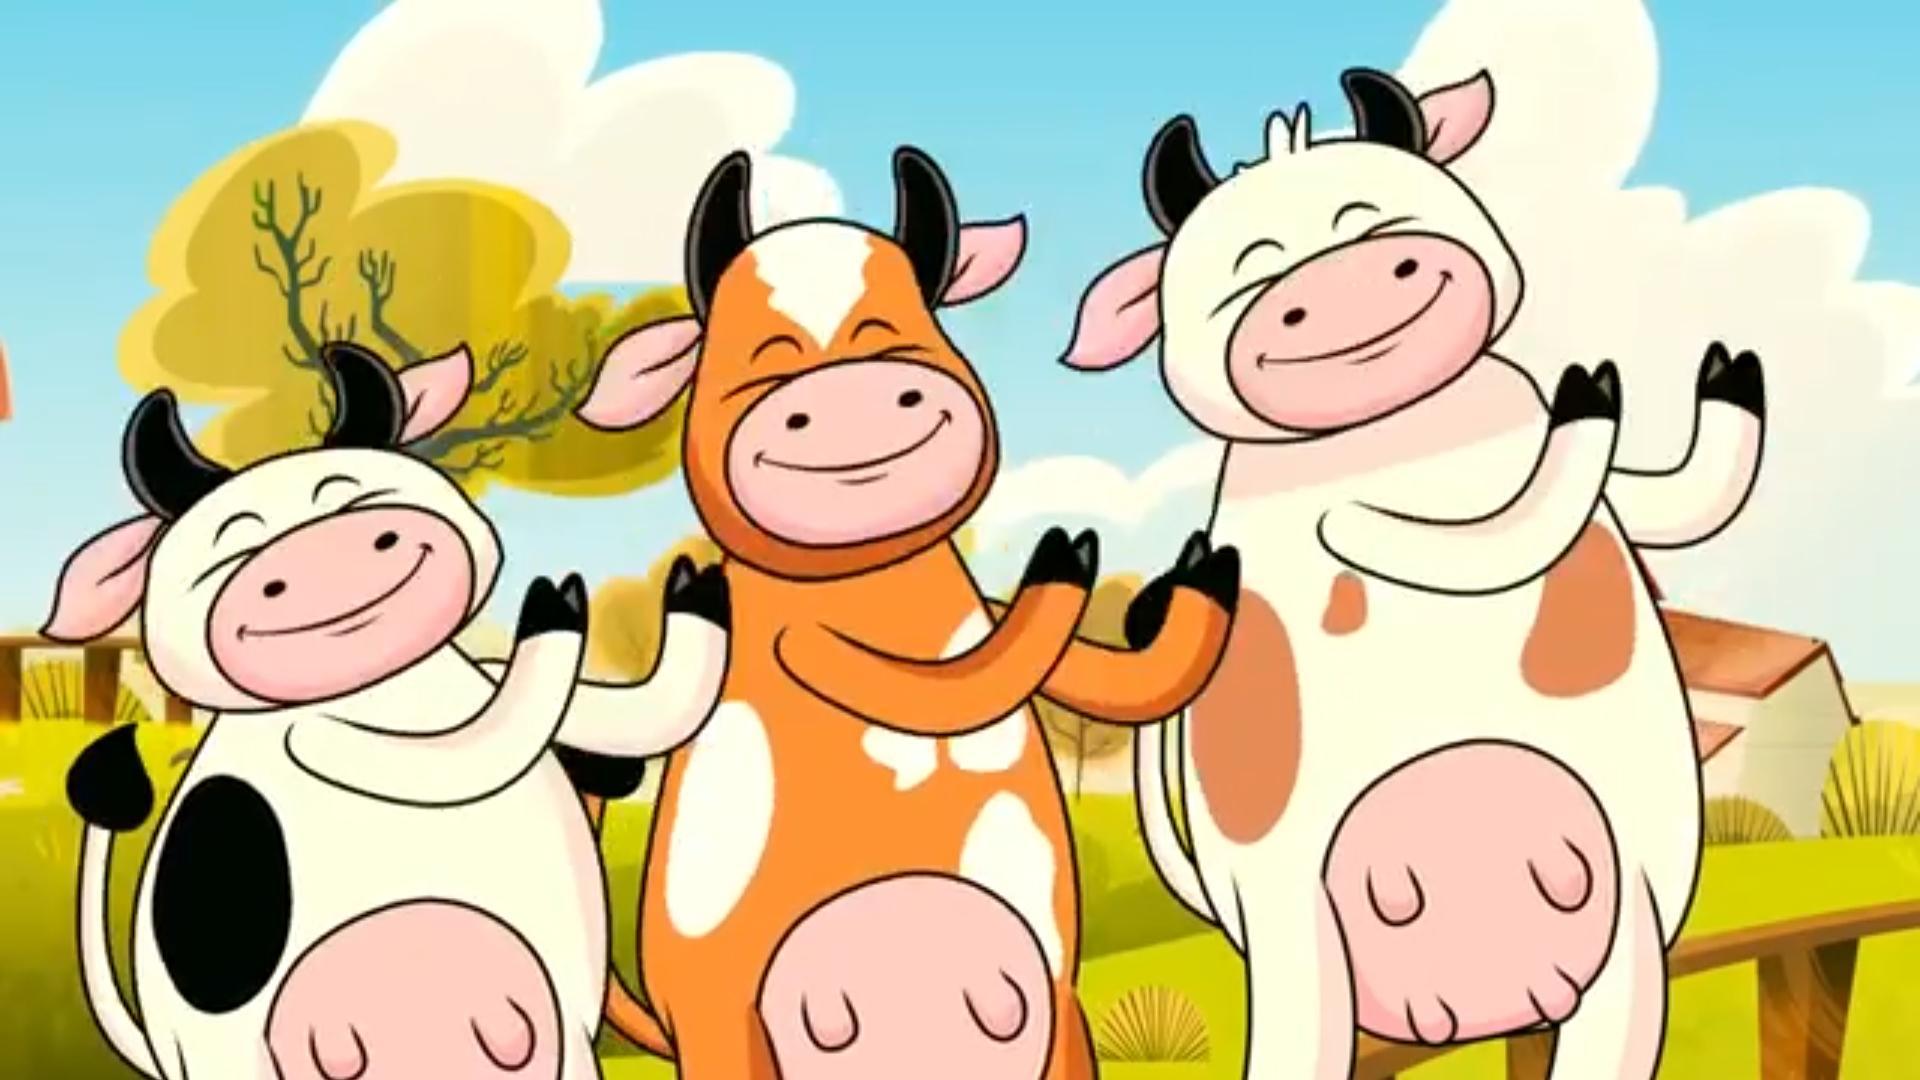 Video para niños - La vaca Lola for Android - APK Download